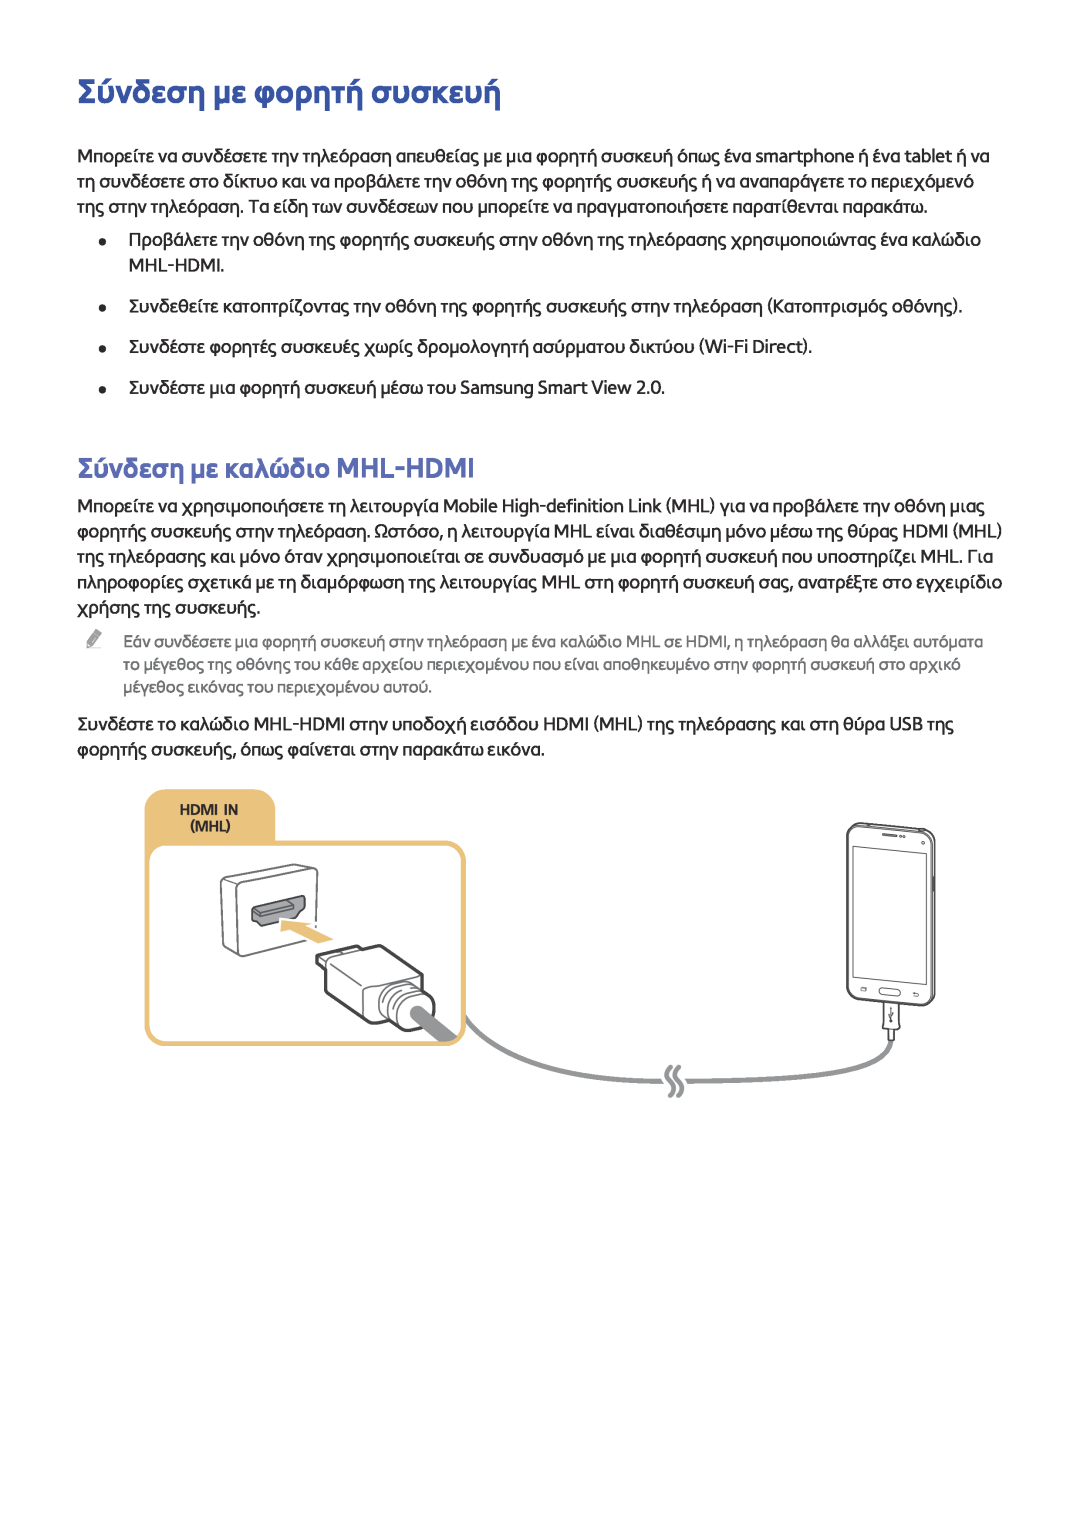 Samsung UE60J6200AWXXH, UE50J6240AWXXH, UE48J6300AWXXH manual Σύνδεση με φορητή συσκευή, Σύνδεση με καλώδιο MHL-HDMI 